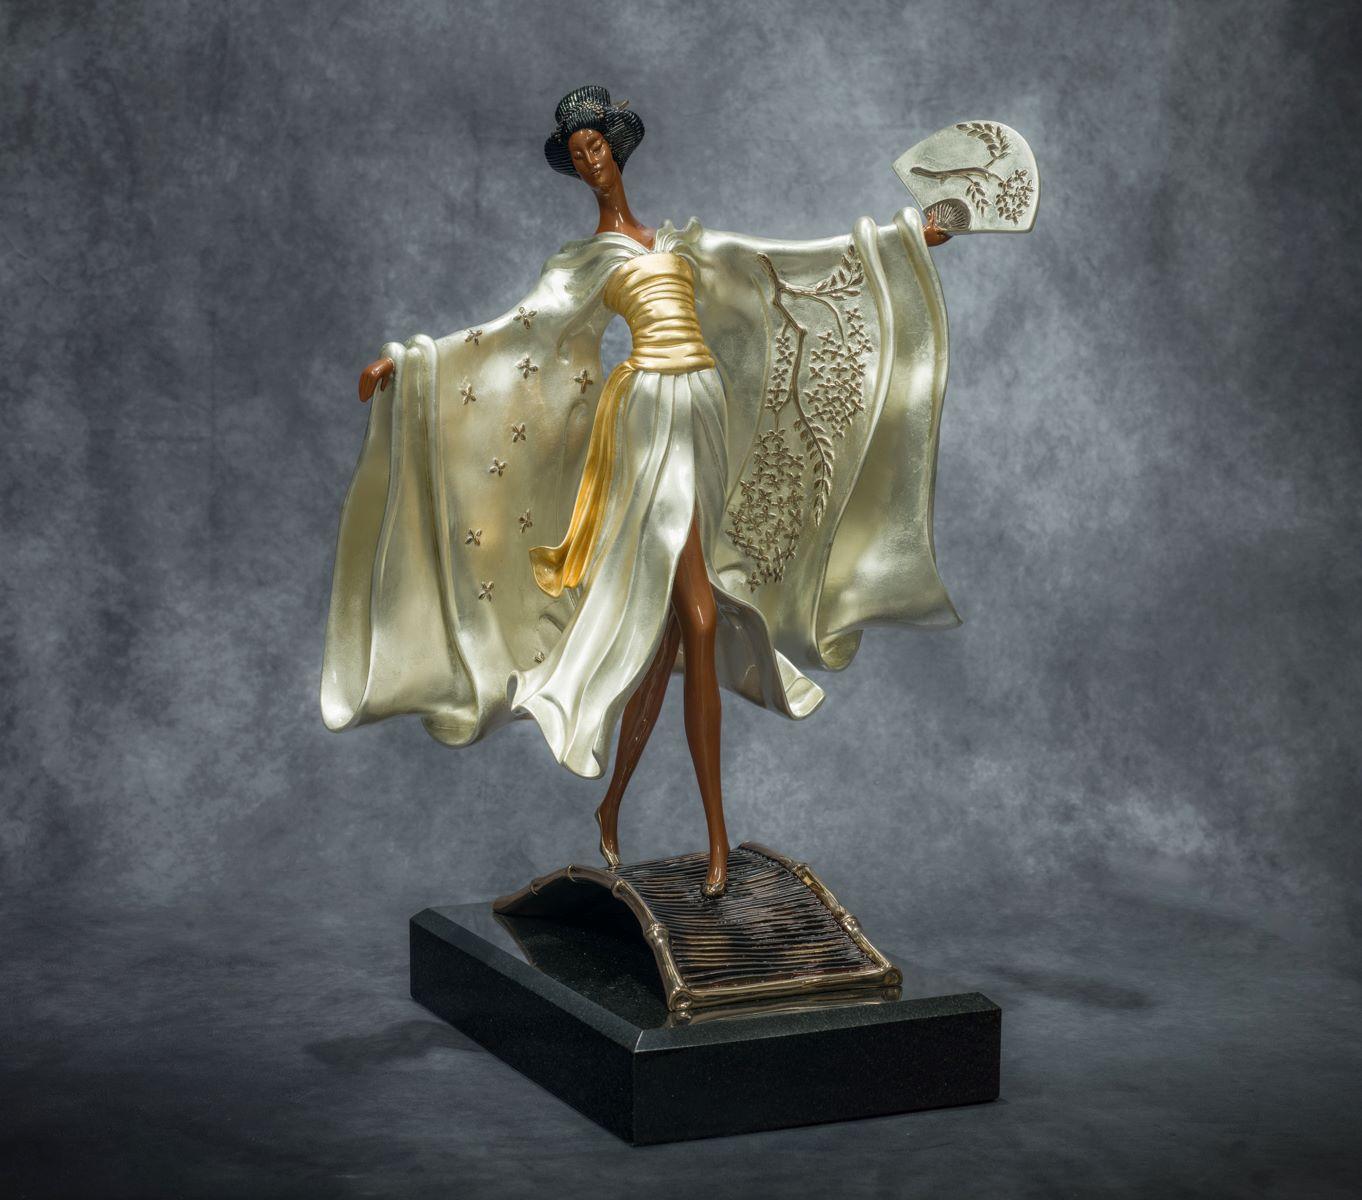 Erté Figurative Sculpture - Asian Princess